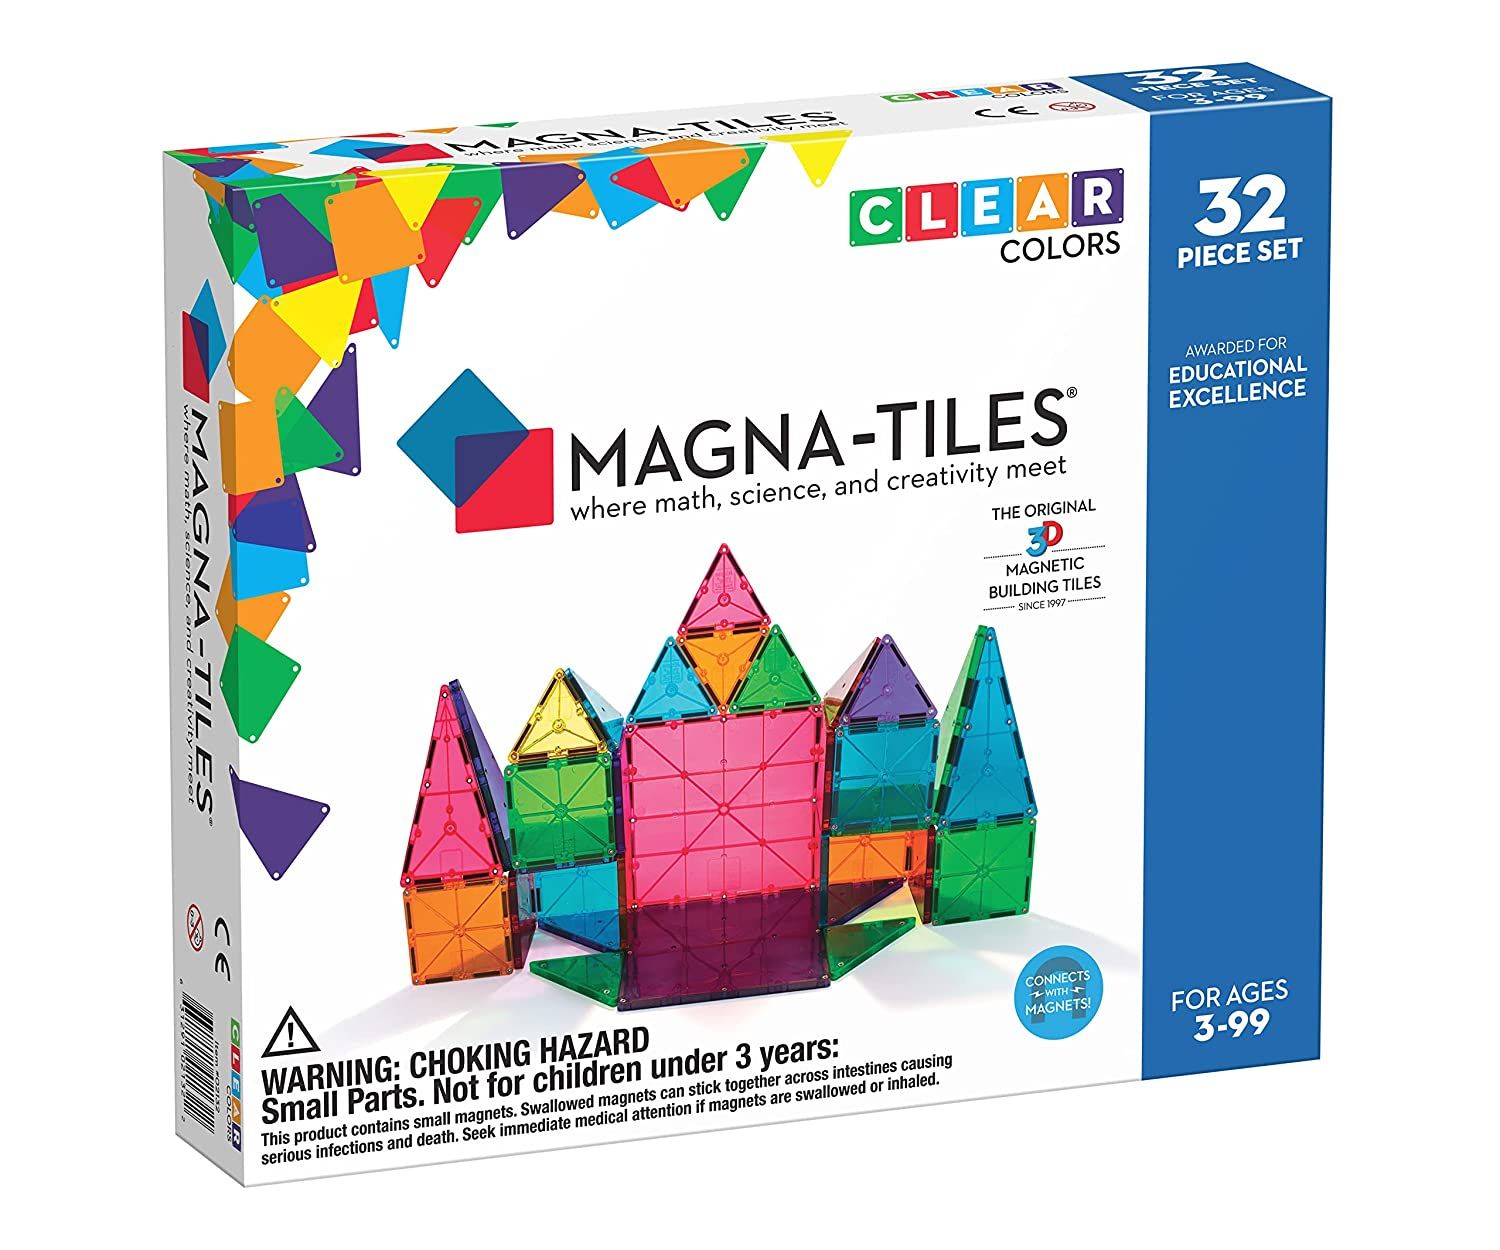 Magna-Tiles-32-Piece-Clear-Colors-Set1-1